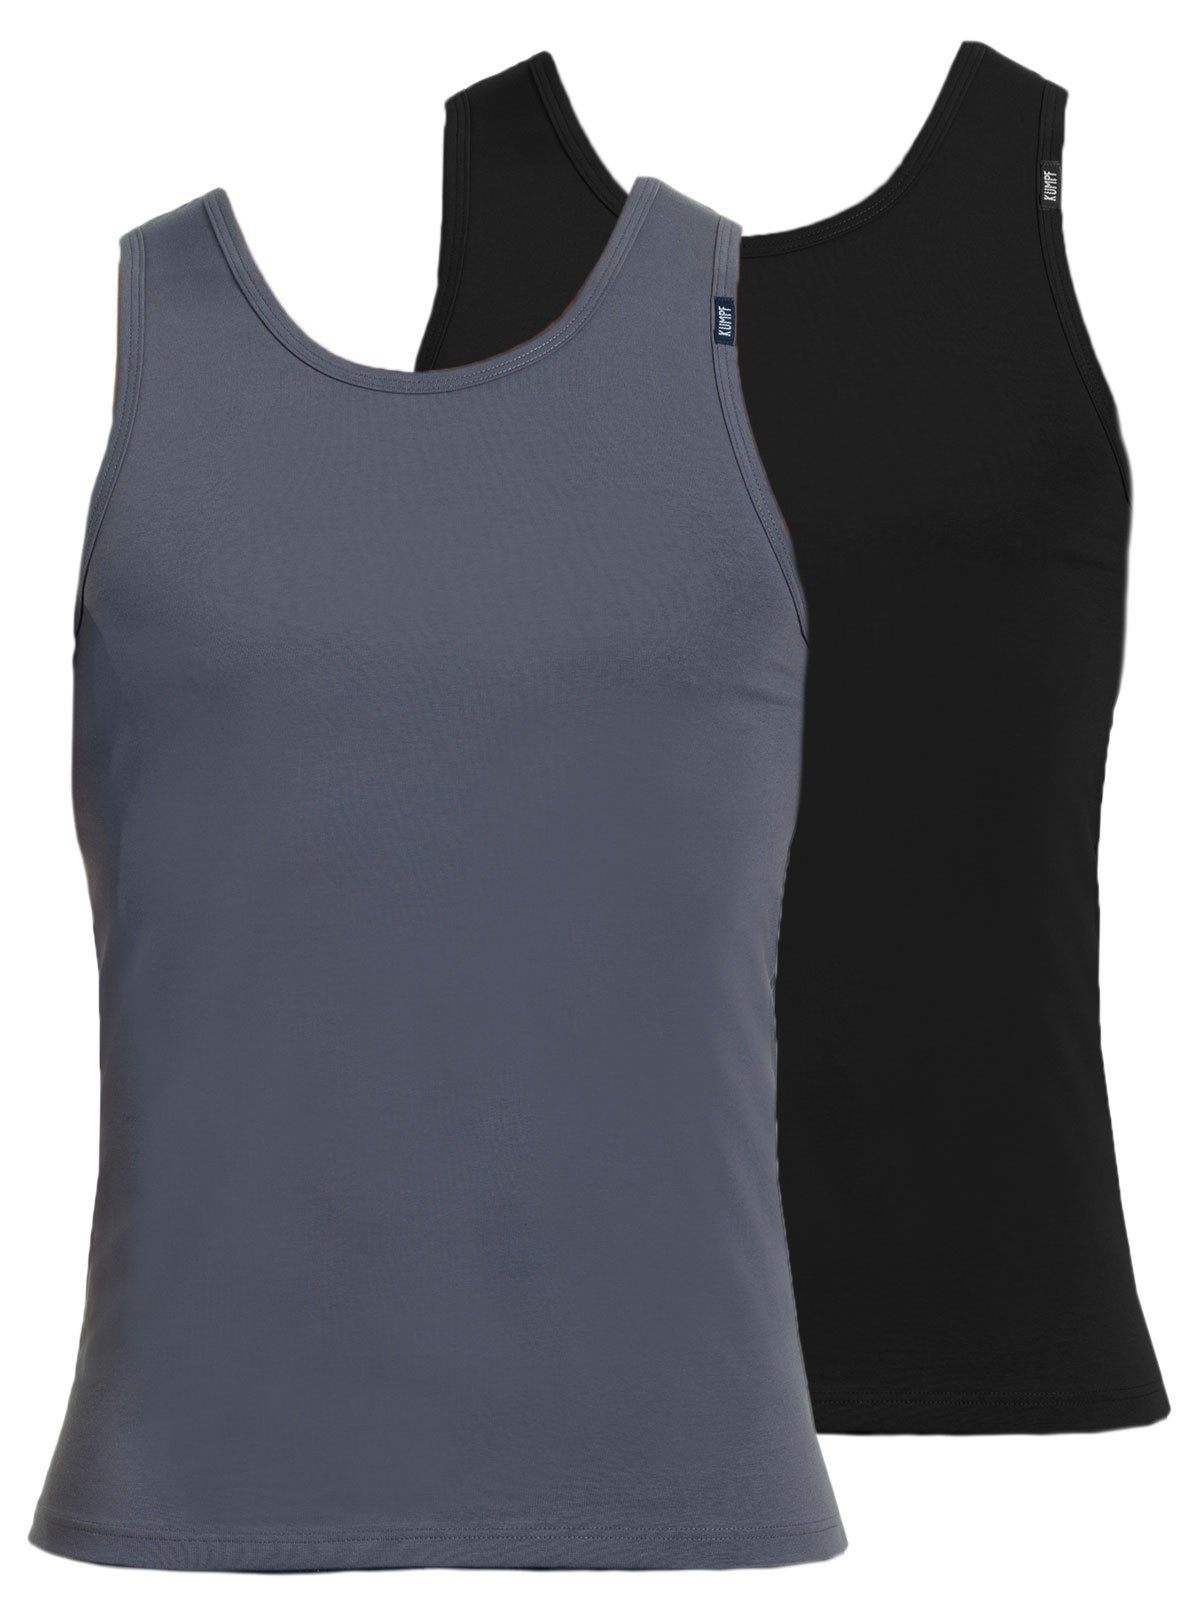 KUMPF Achselhemd 2er Sparpack Herren Unterhemd Bio Cotton (Spar-Set, 2-St) hohe Markenqualität mittelgrau schwarz | Ärmellose Unterhemden